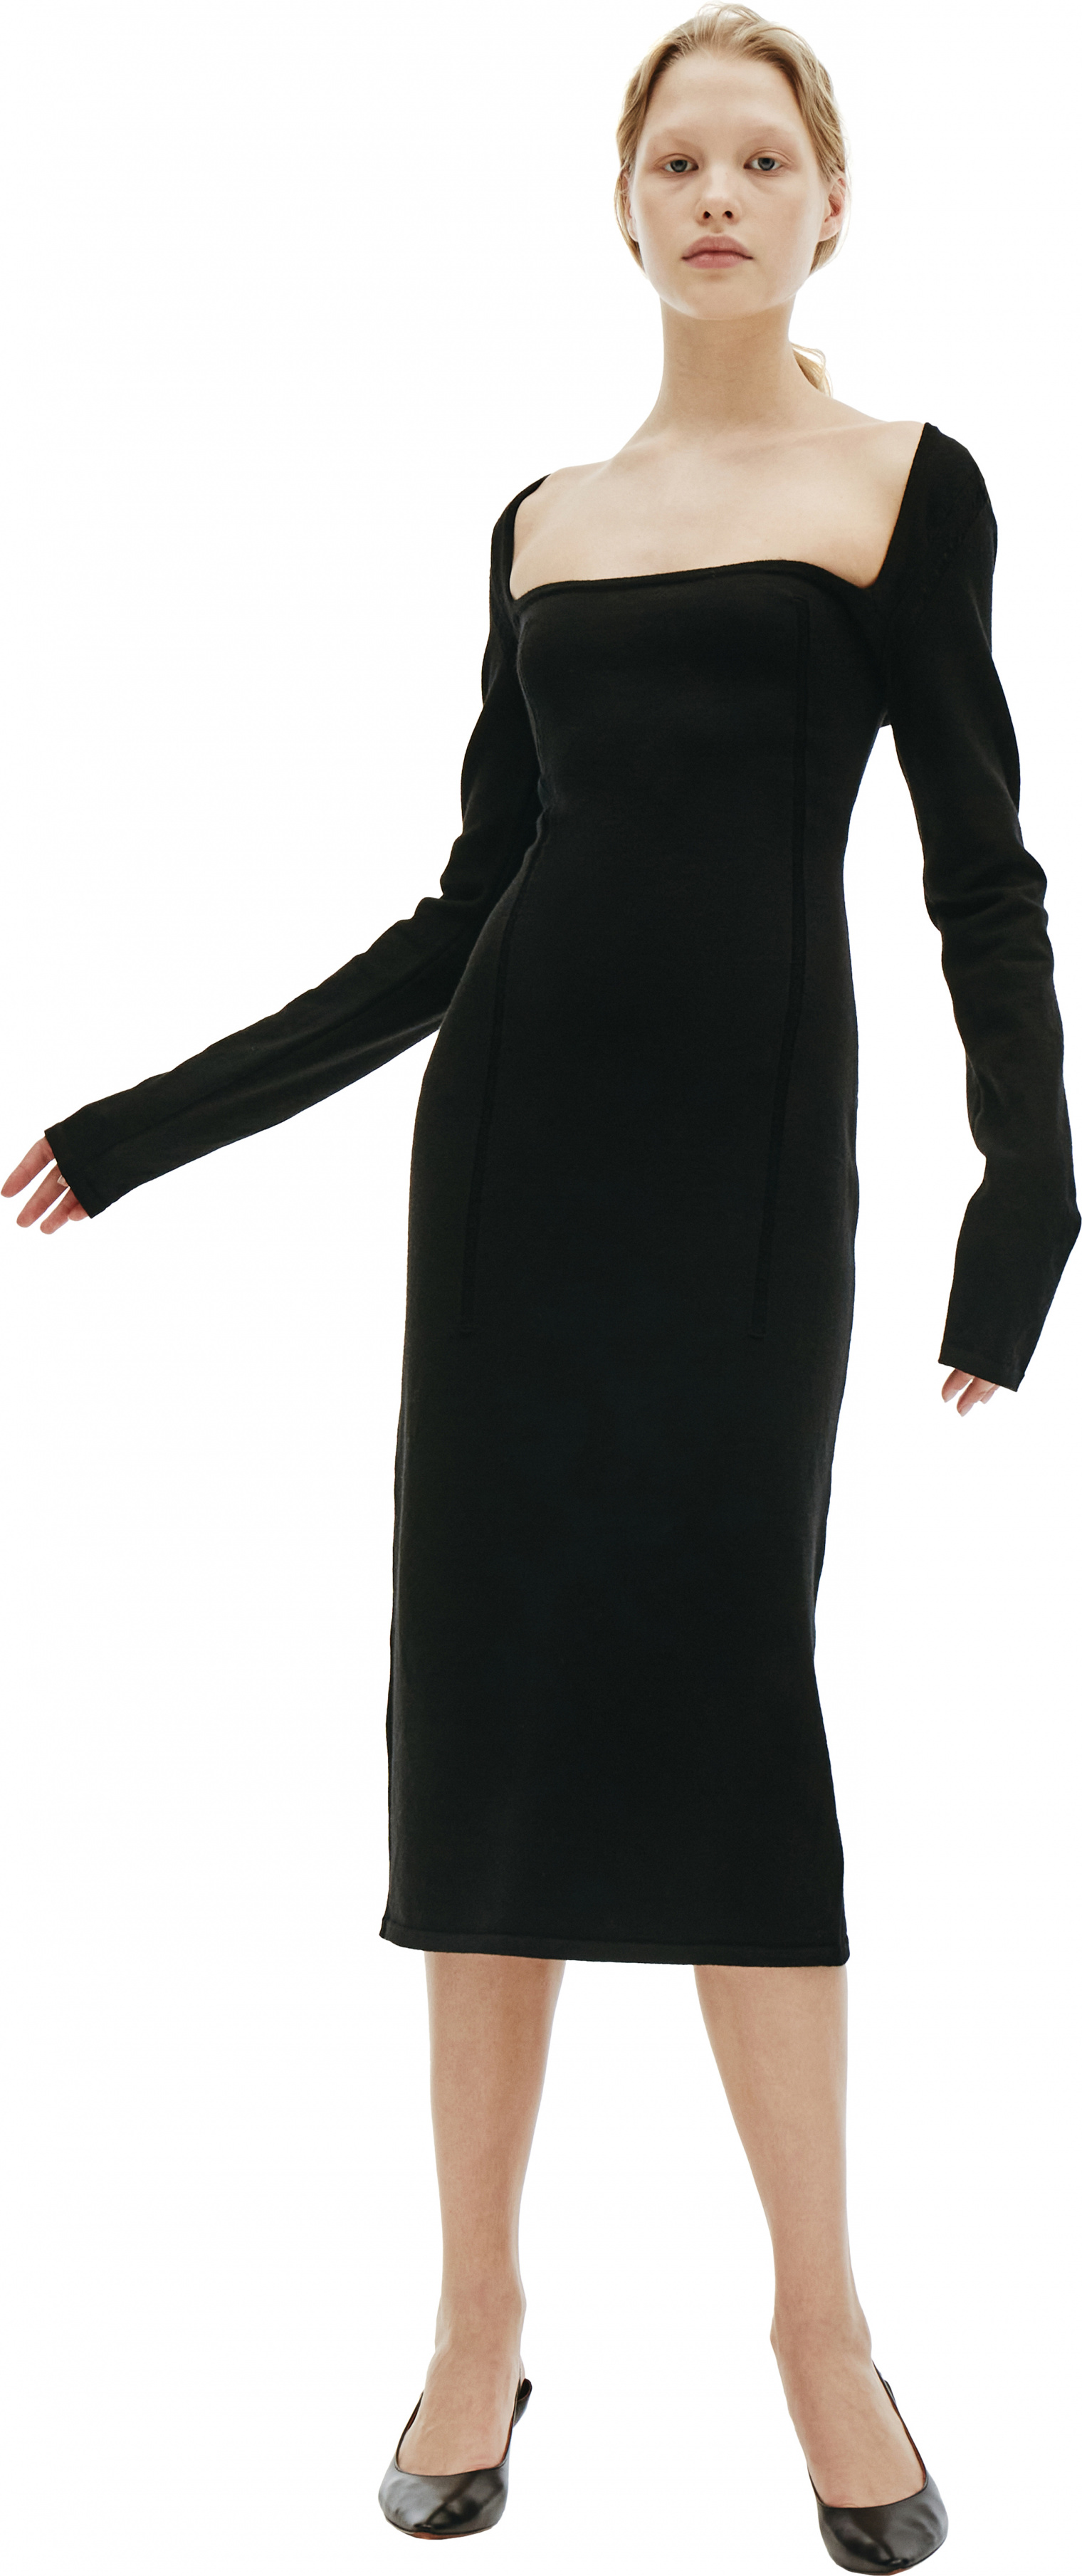 Ann Demeulemeester Black Wool Elongated Dress